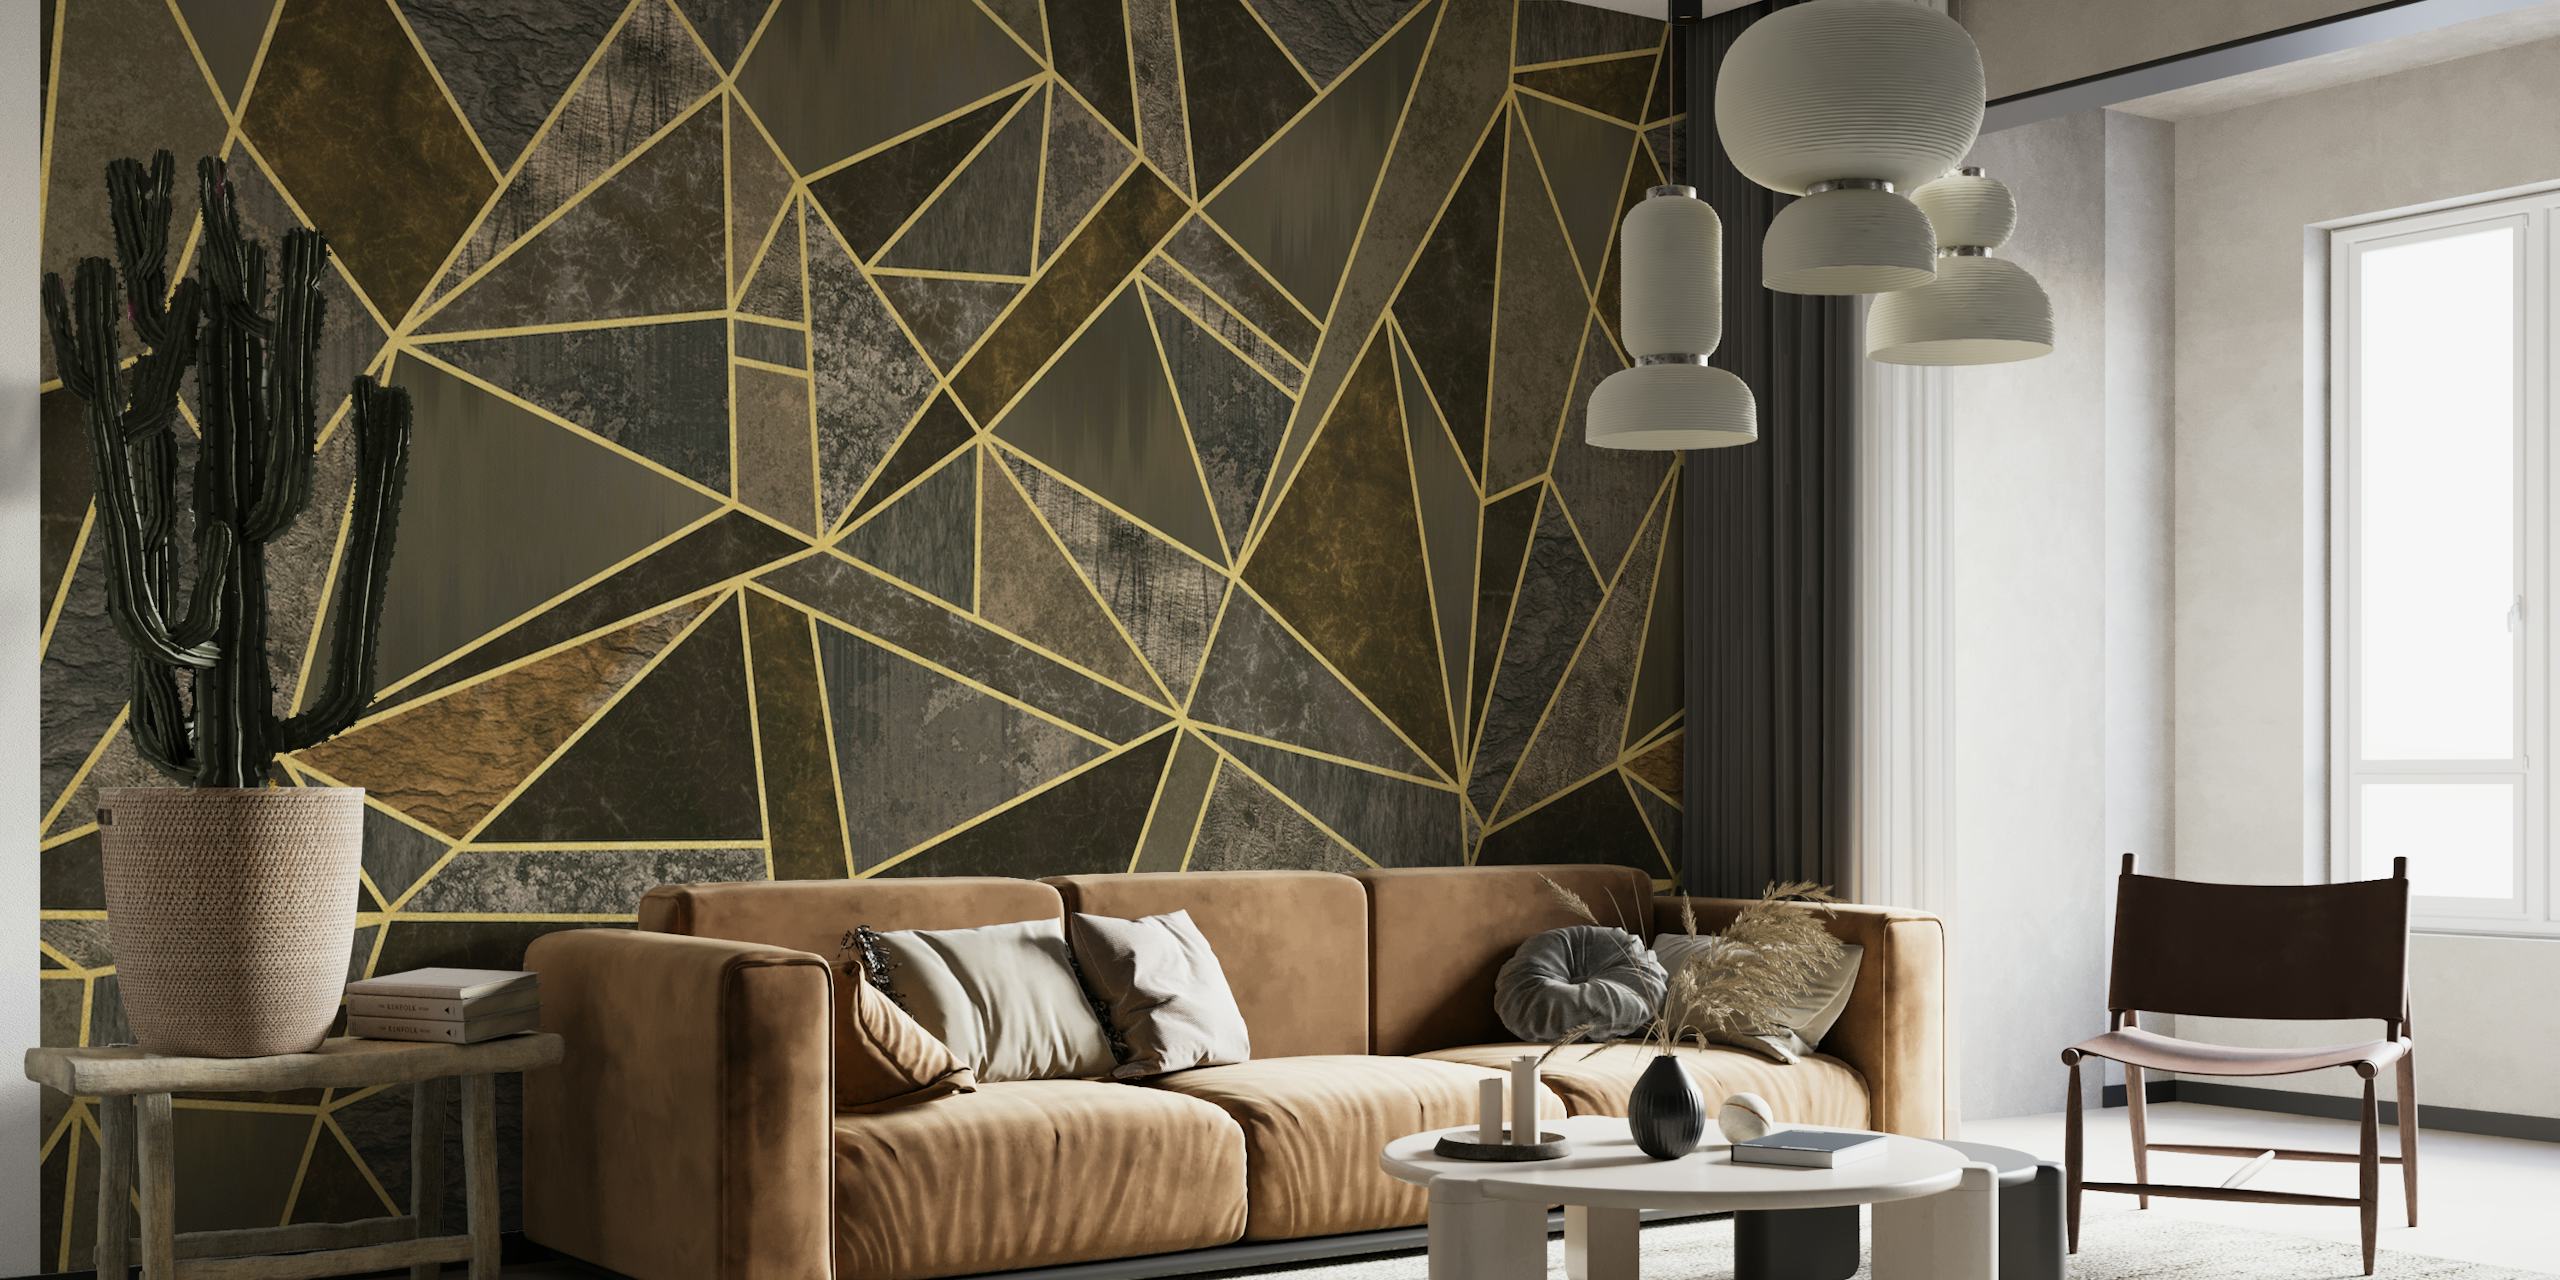 Luksuriøst vægmaleri med geometrisk mosaikmønster i brunt og guld